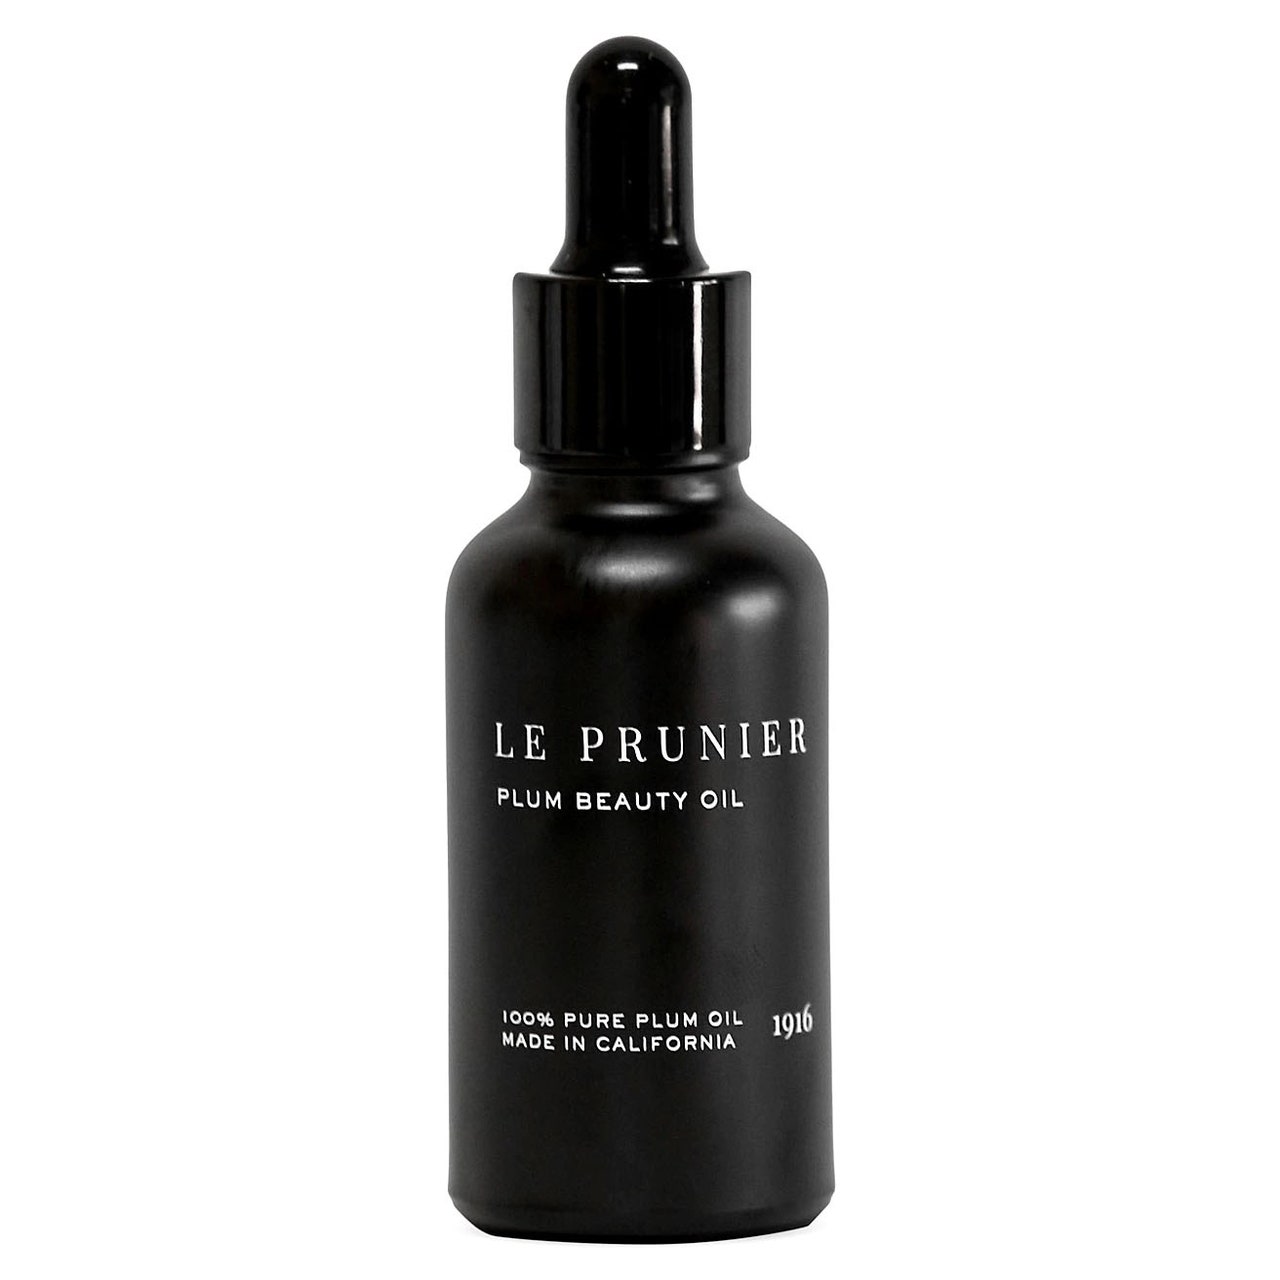 Le Prunier Plum Beauty Oil schwarze Flasche auf weißem Hintergrund